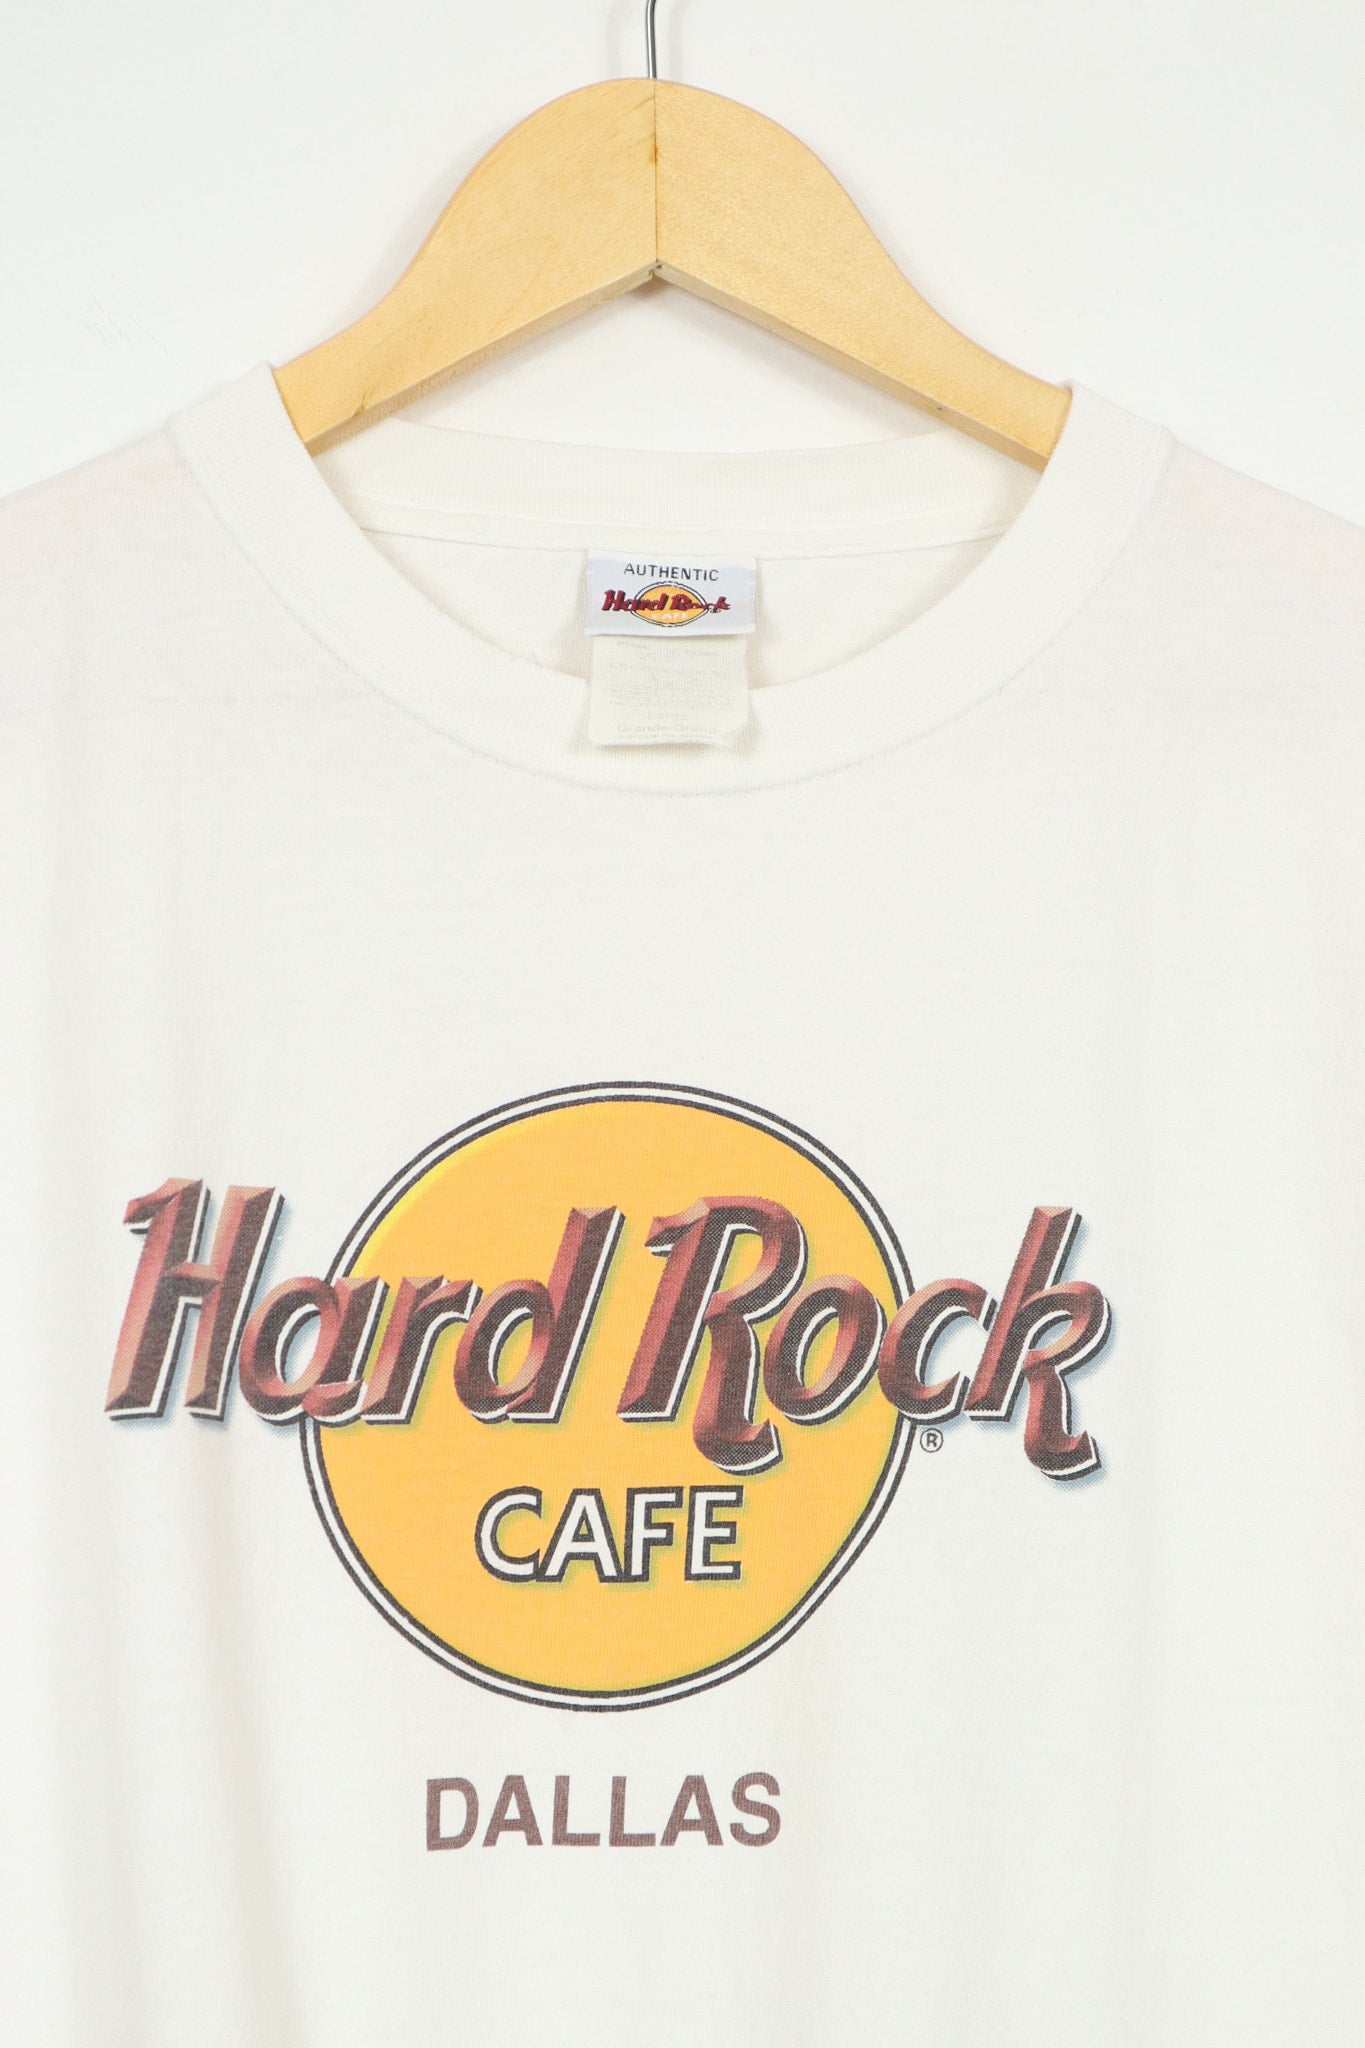 Vintage Hard Rock Dallas Tee